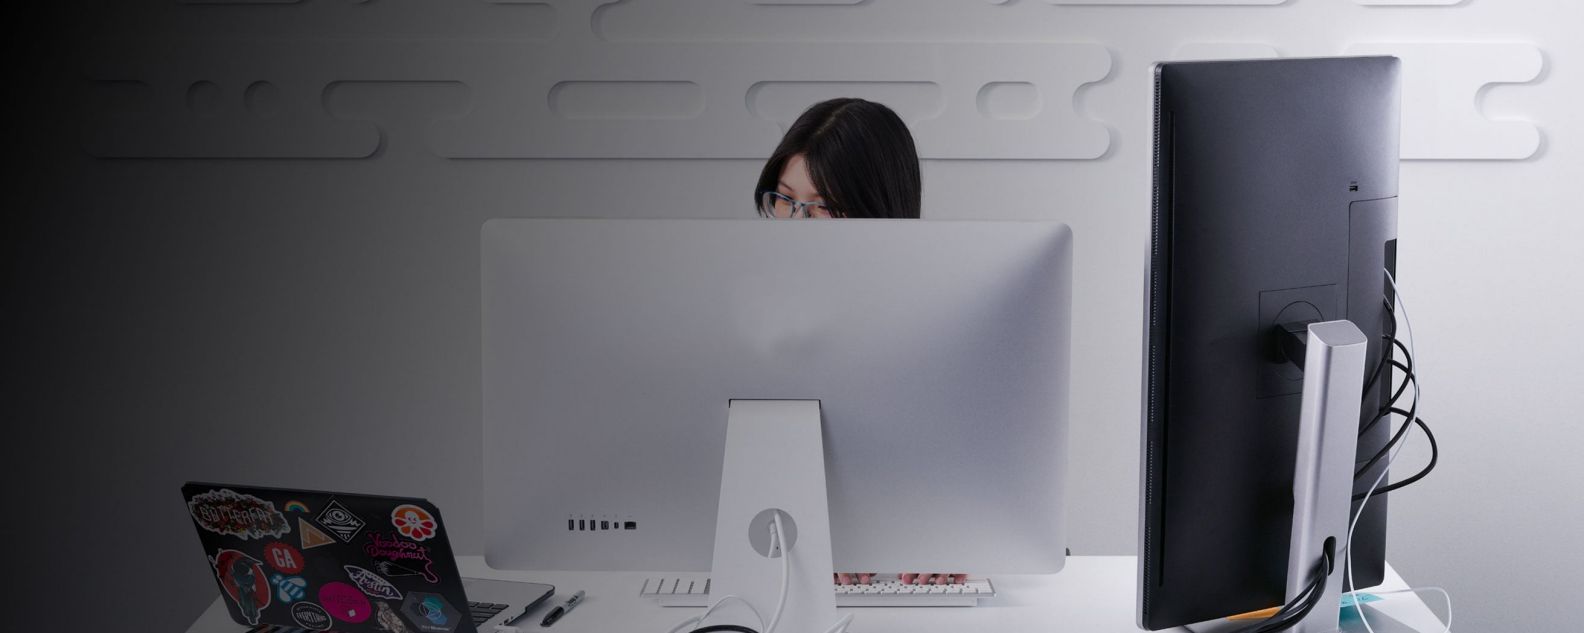 Femme concentrée travaillant devant un écran d’ordinateur portable